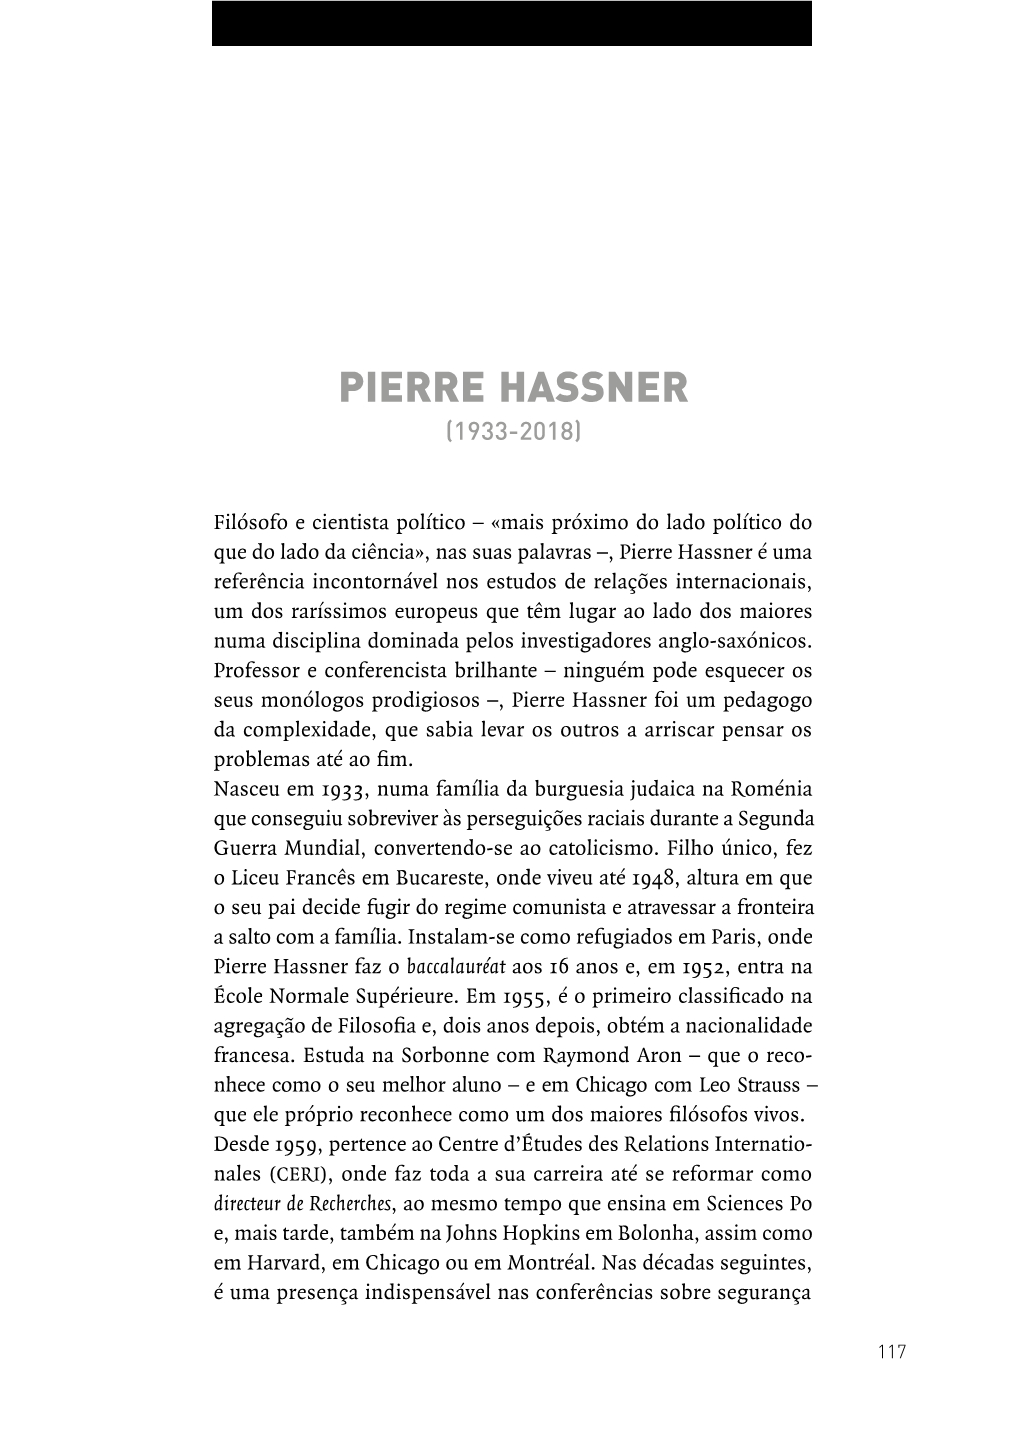 Pierre Hassner (1933-2018)